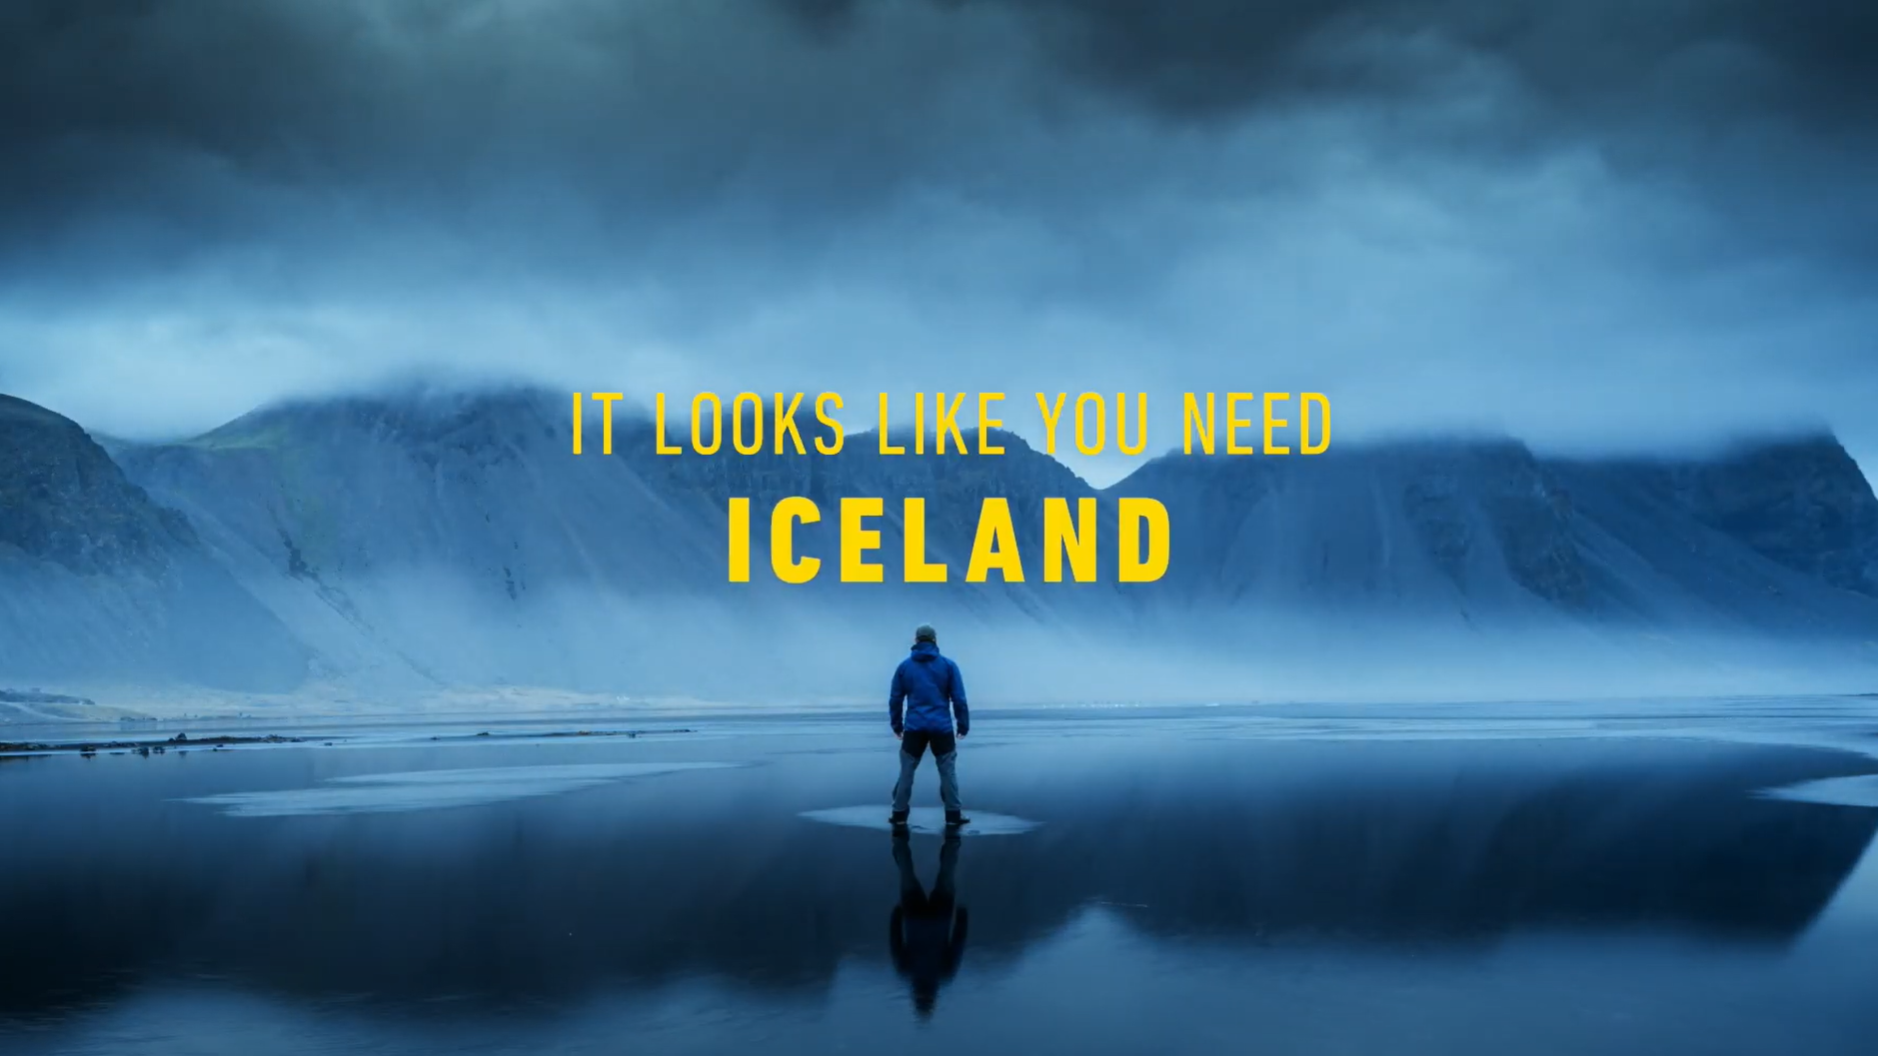 Looks like you need Iceland